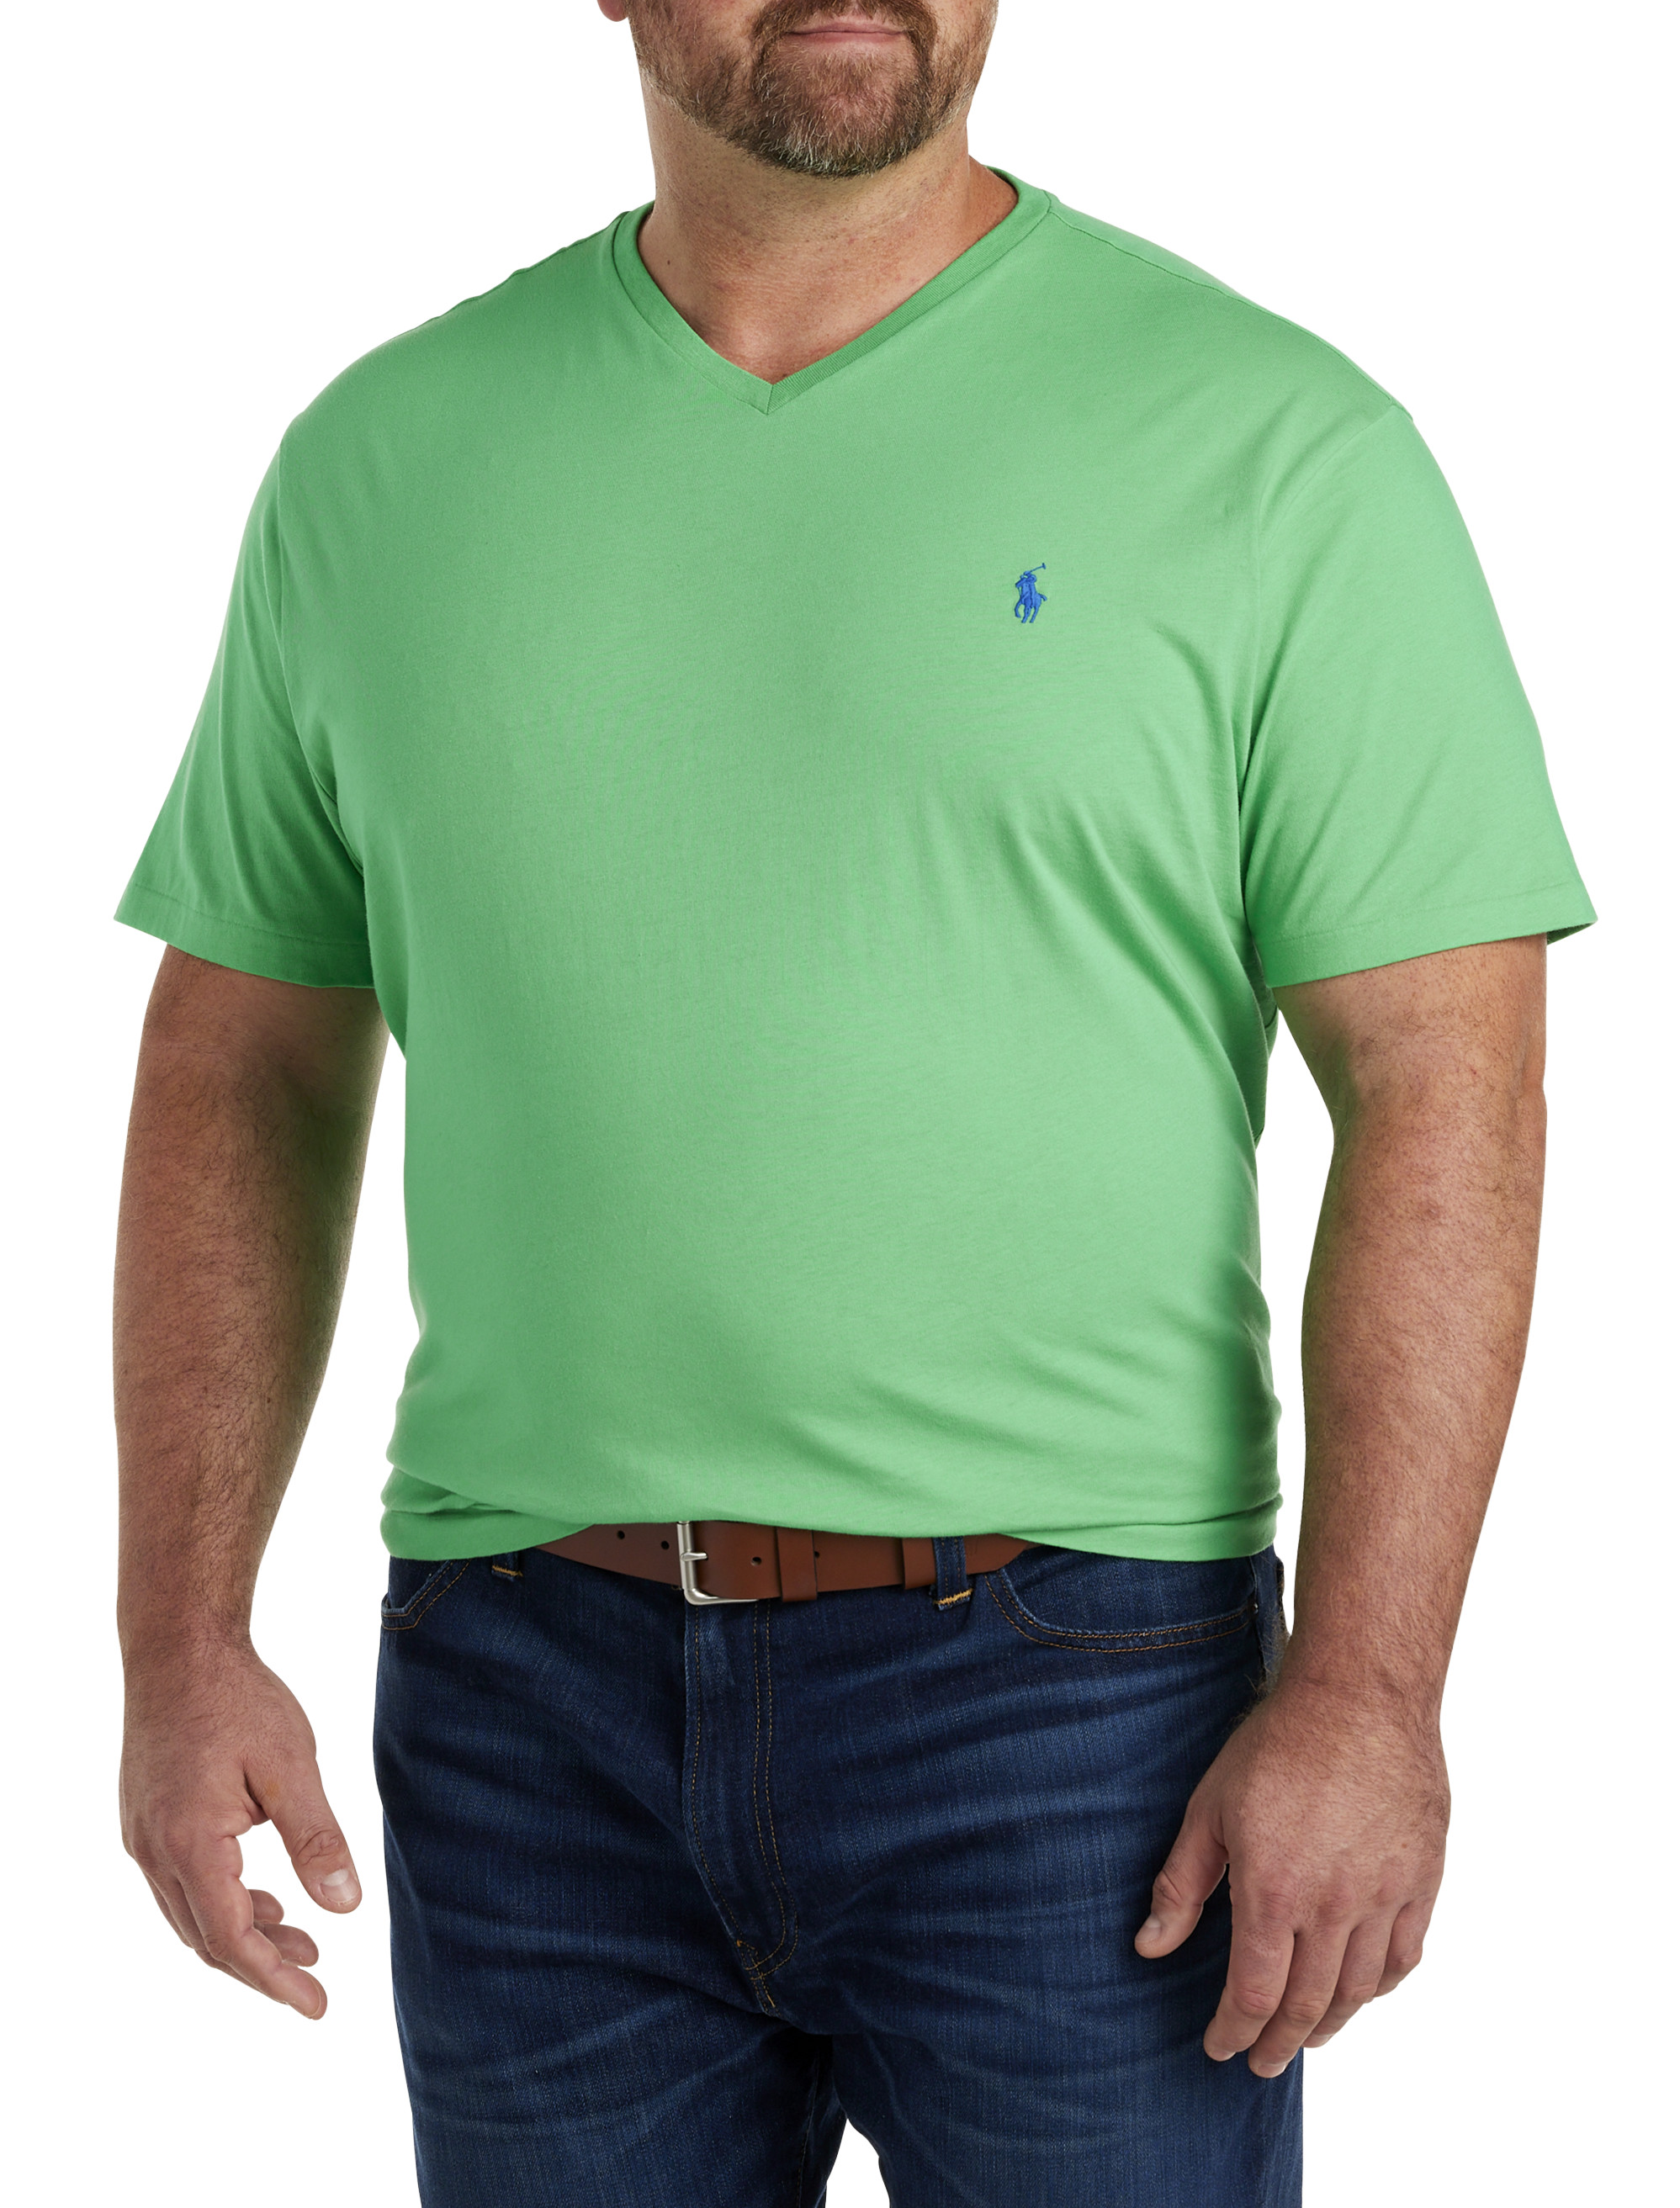 Big + Tall, Polo Ralph Lauren V-Neck T-Shirt